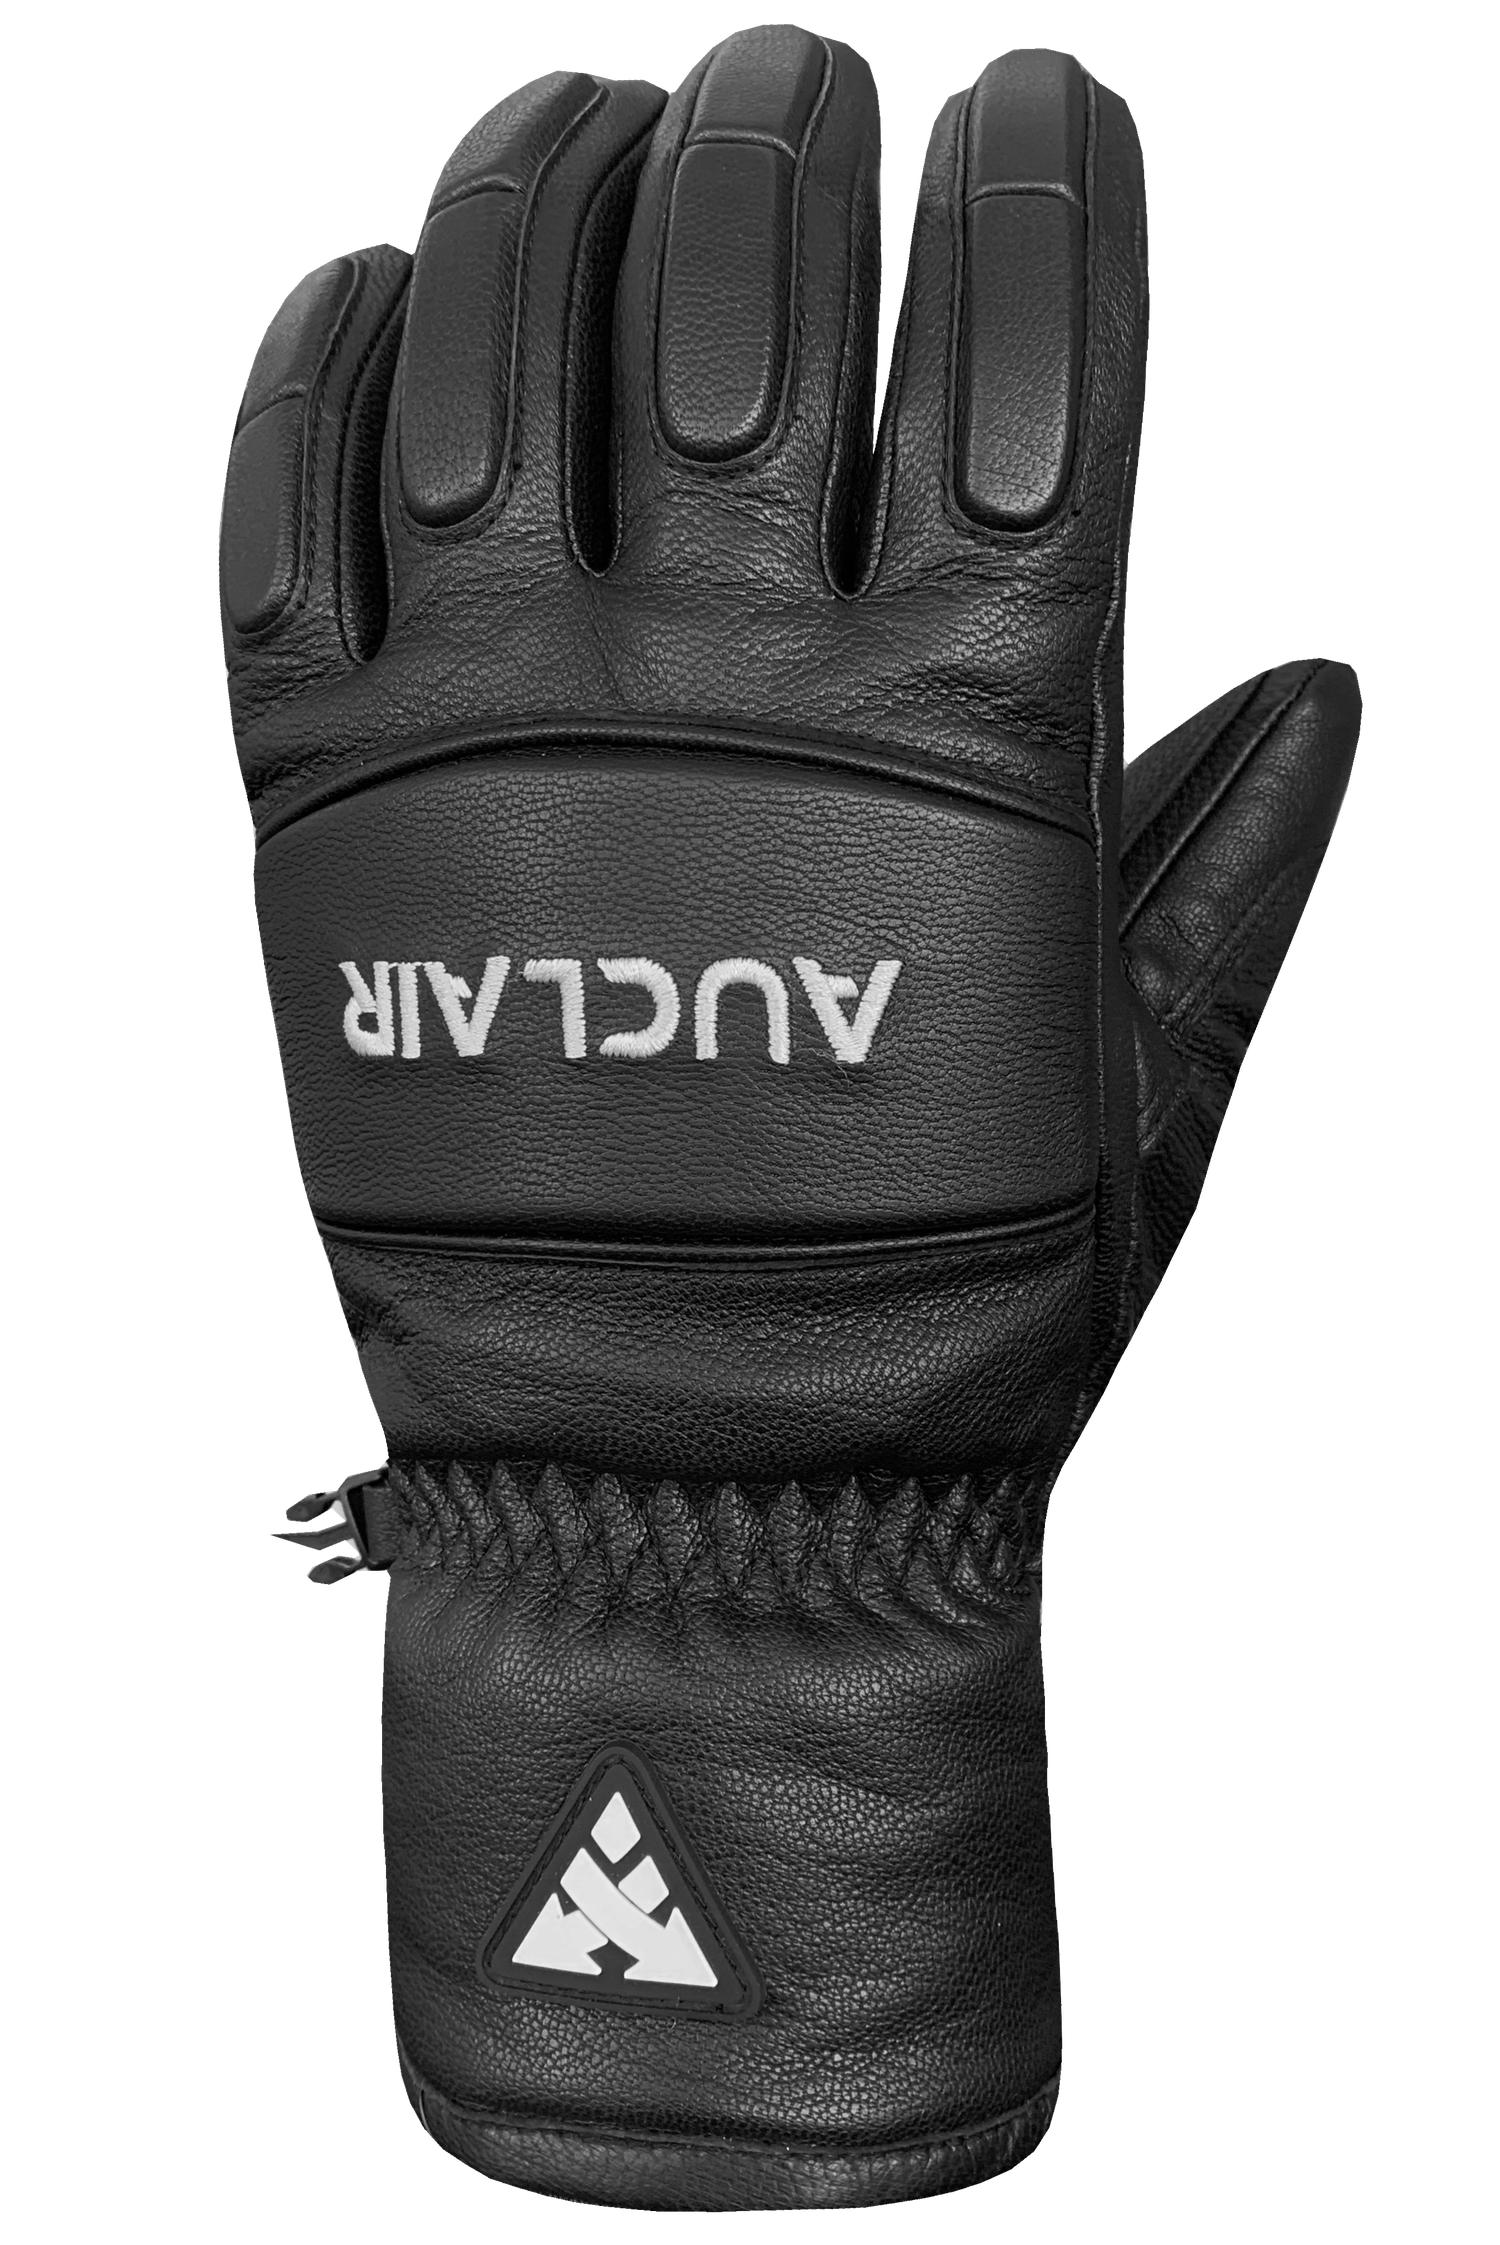 Son of T 4 Gloves - Adult, Black/Black